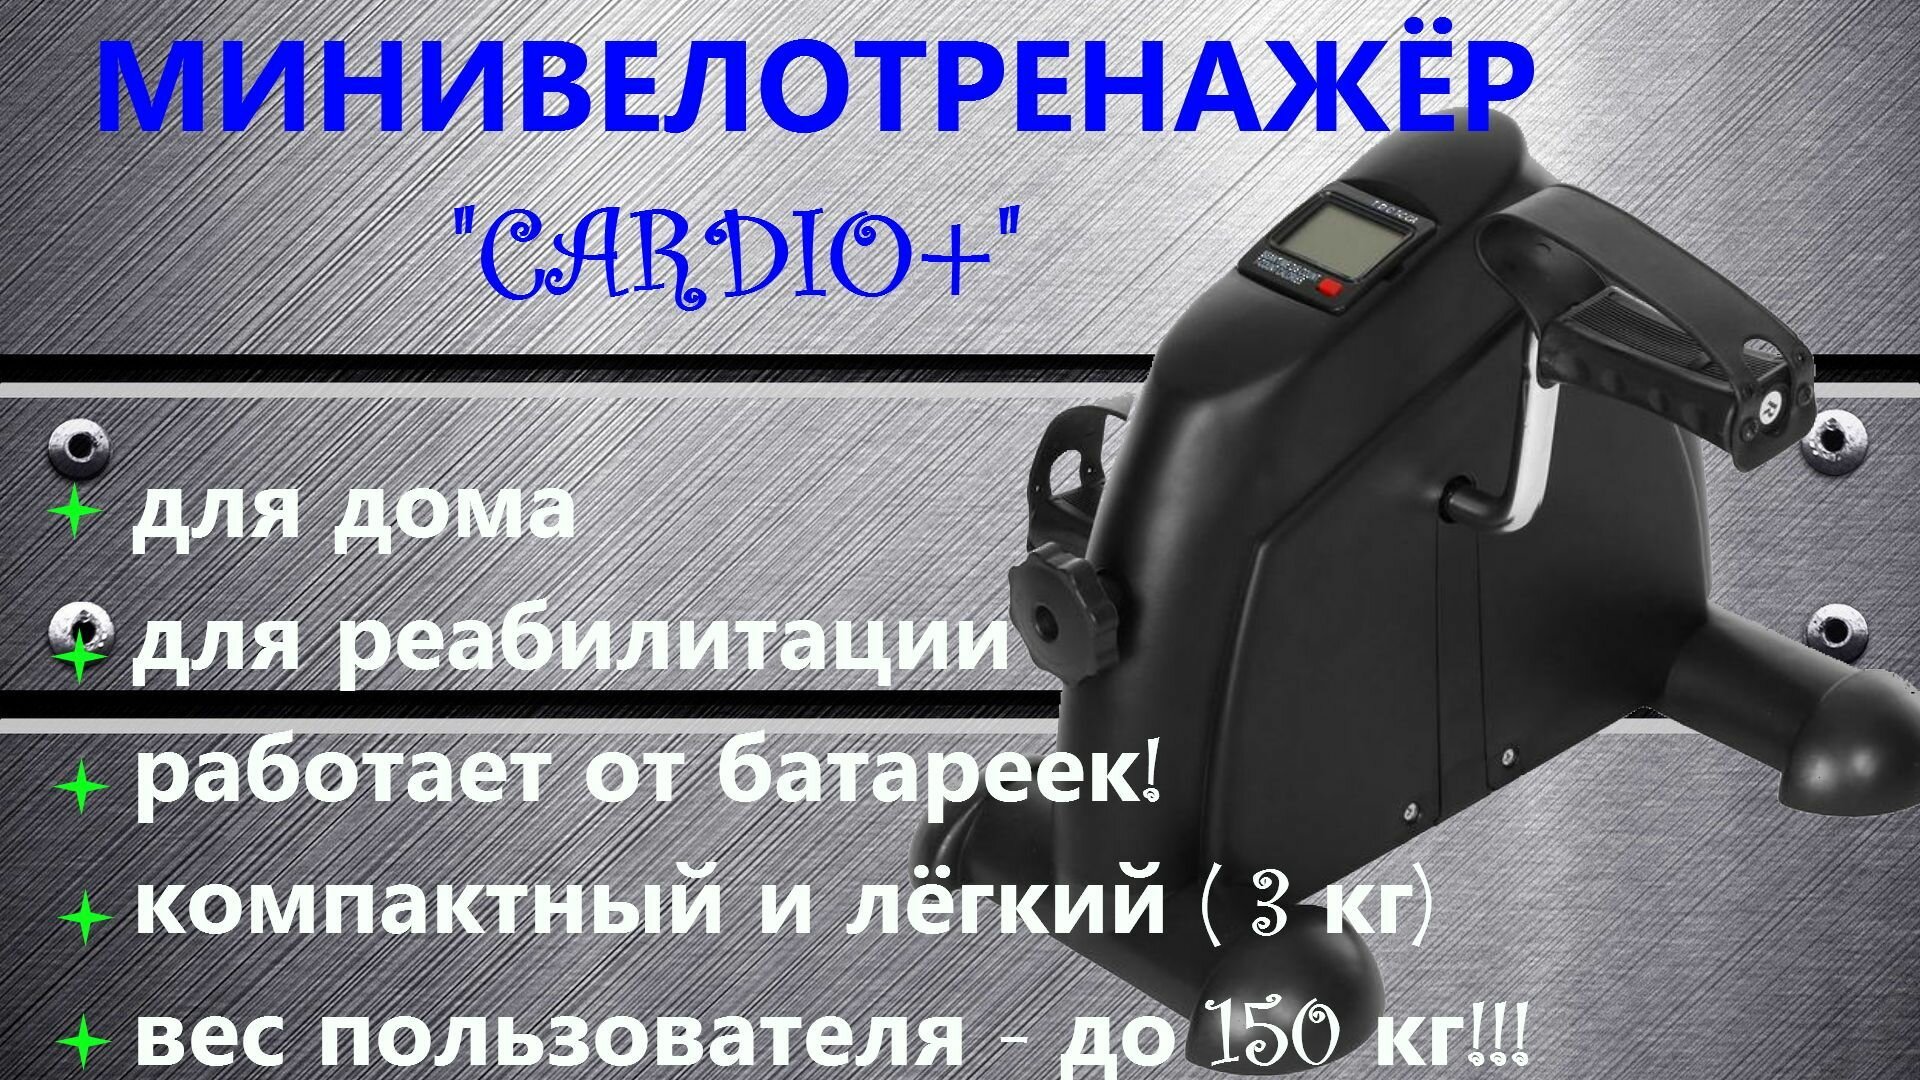 Велотренажер "Cardio+" (с дисплеем) кардио, минивелотренажер для похудения и реабилитации